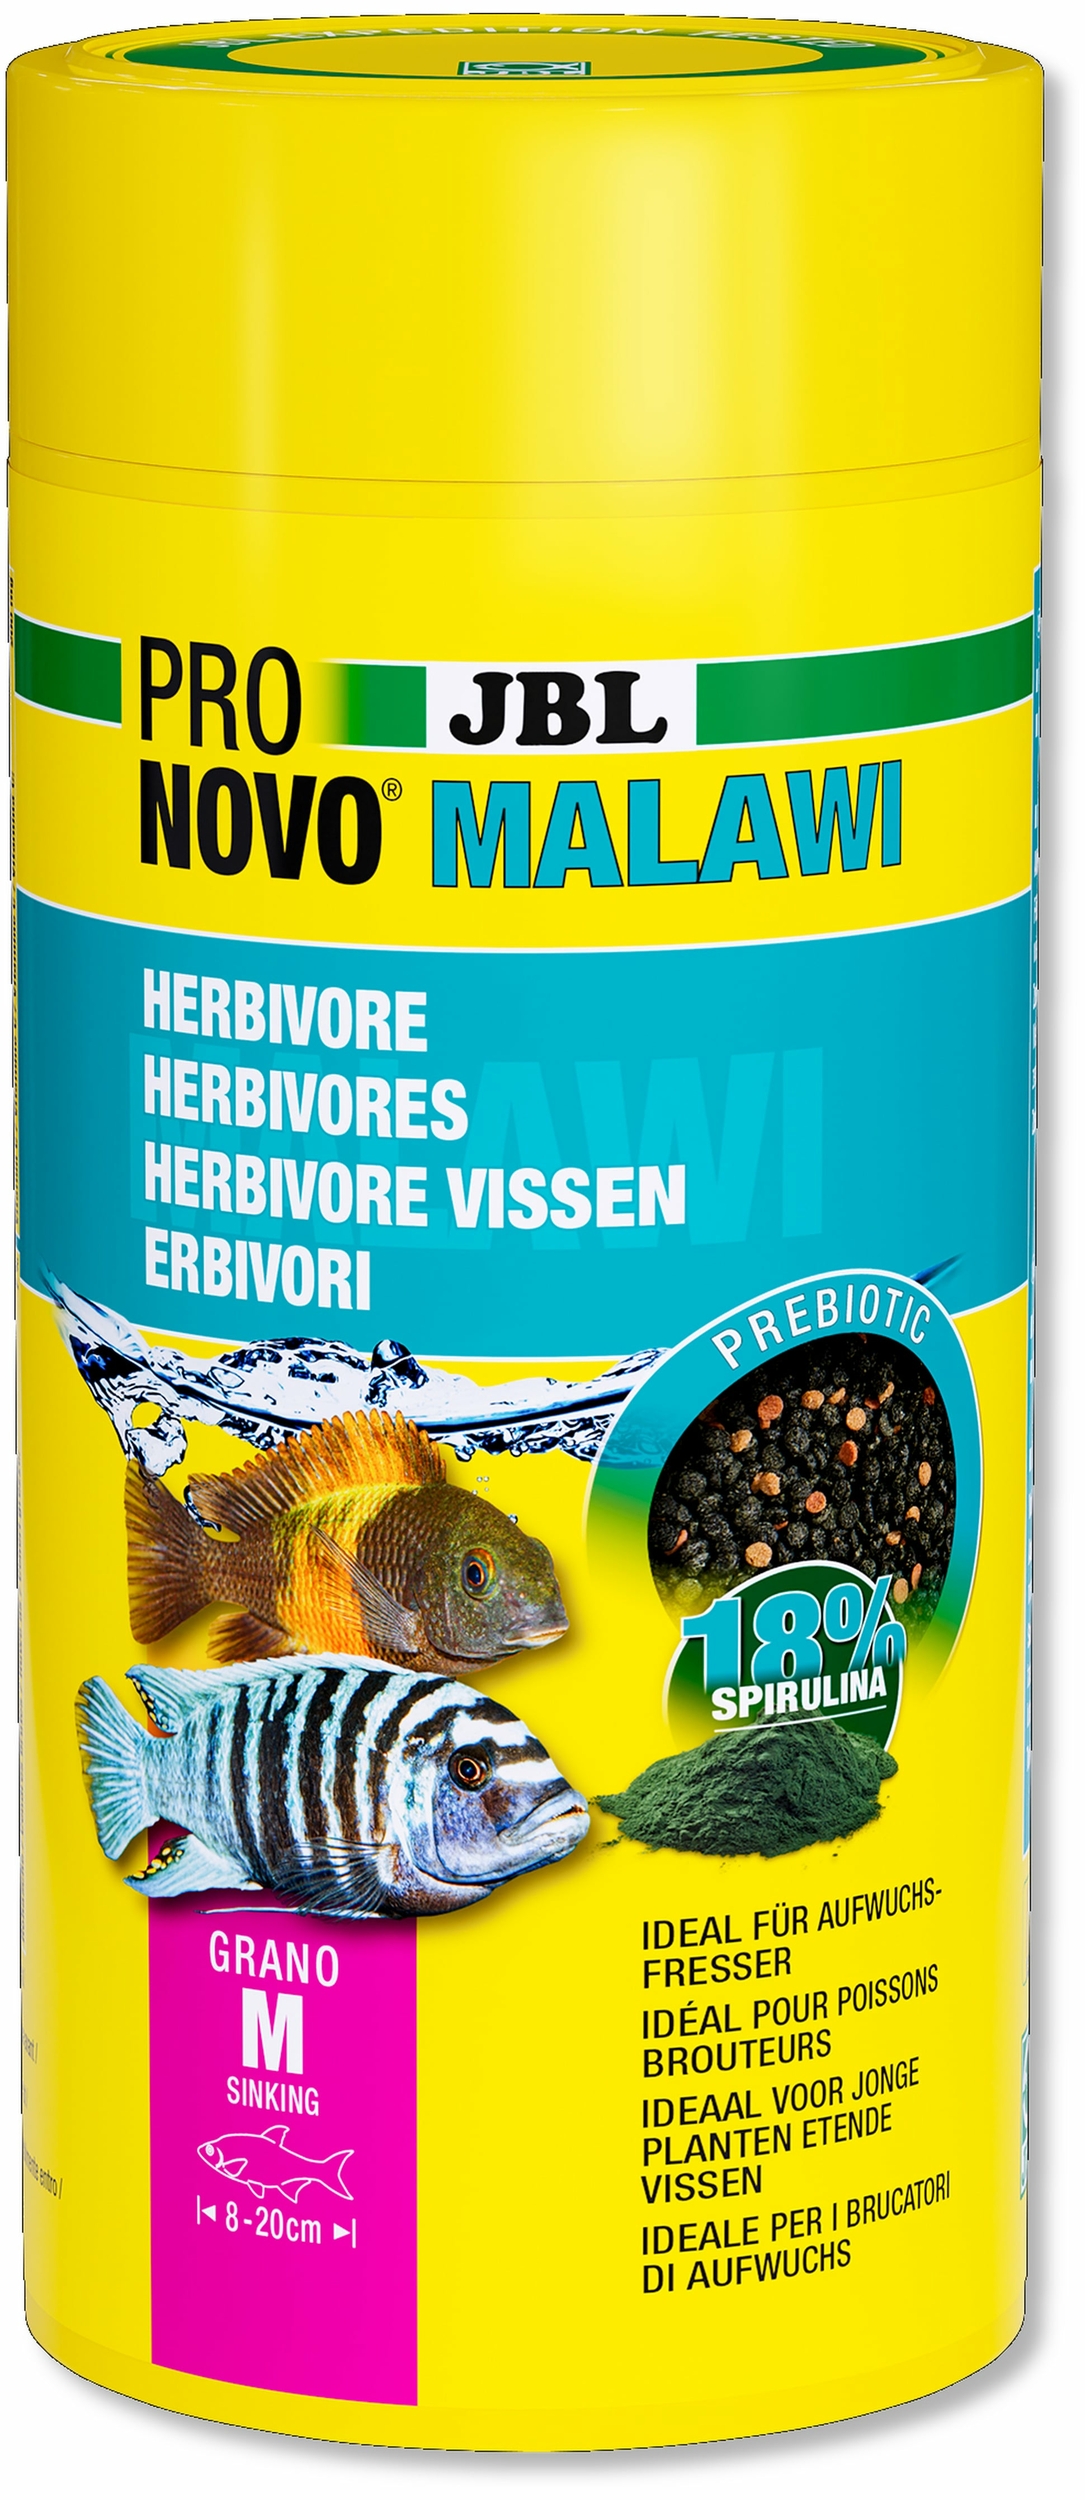 jbl-pronovo-malawi-grano-m-1000-ml-nourriture-en-granules-pour-cichlides-brouteurs-d-algues-des-lacs-malawi-et-tanganyika-de-8-a-20-cm